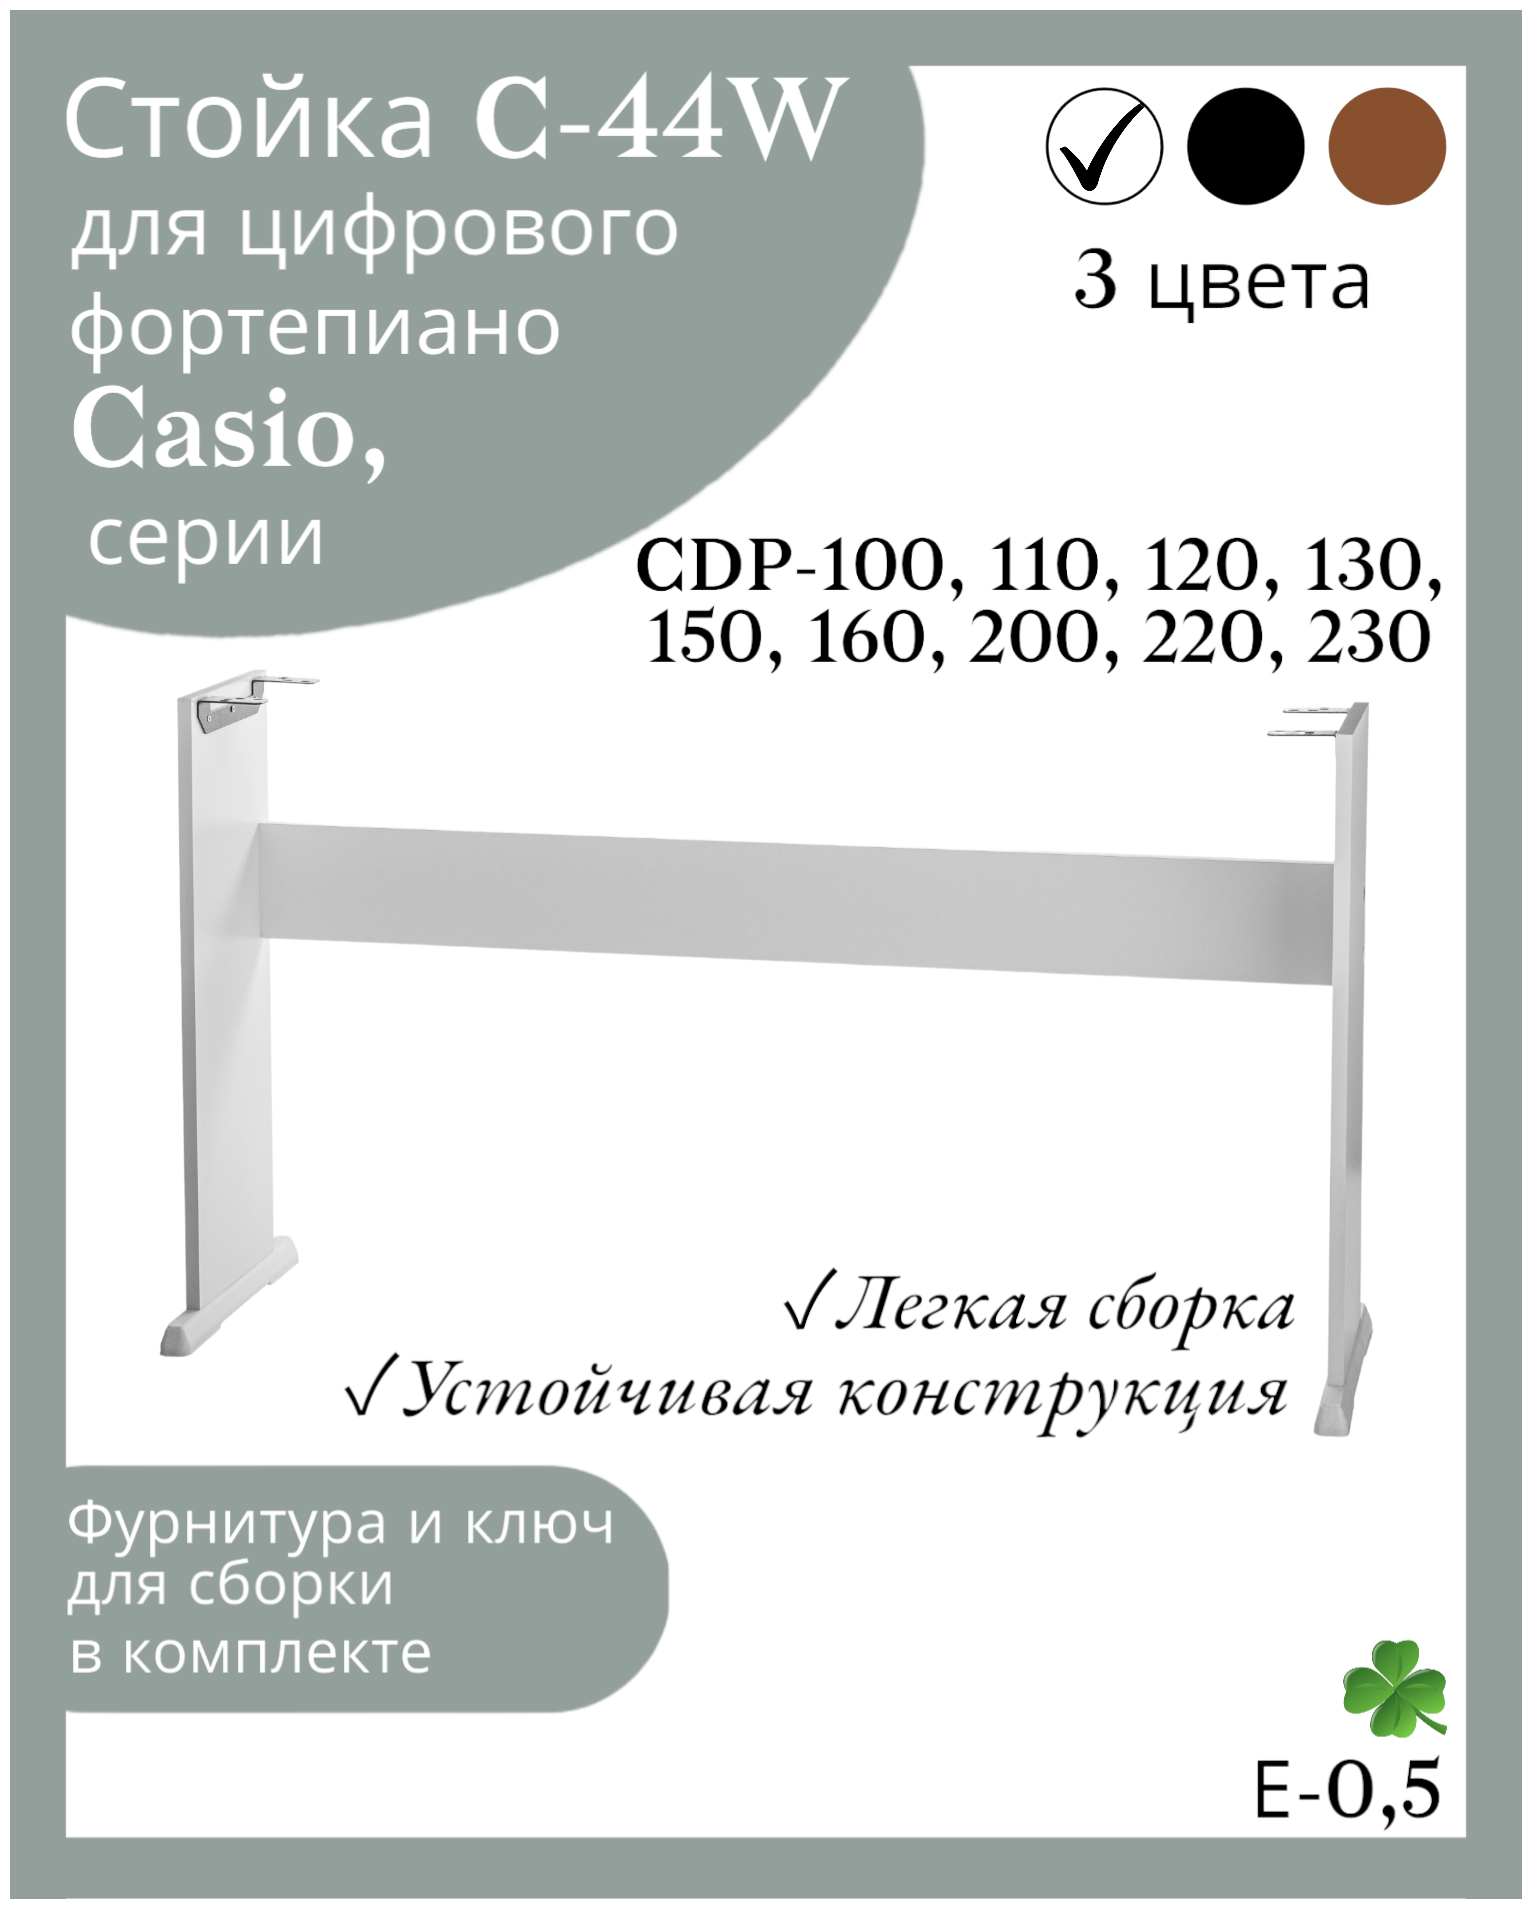 Стойка С-44W для цифровых пианино Casio cdp-100, 120,130,150,160,200,220,230, белая